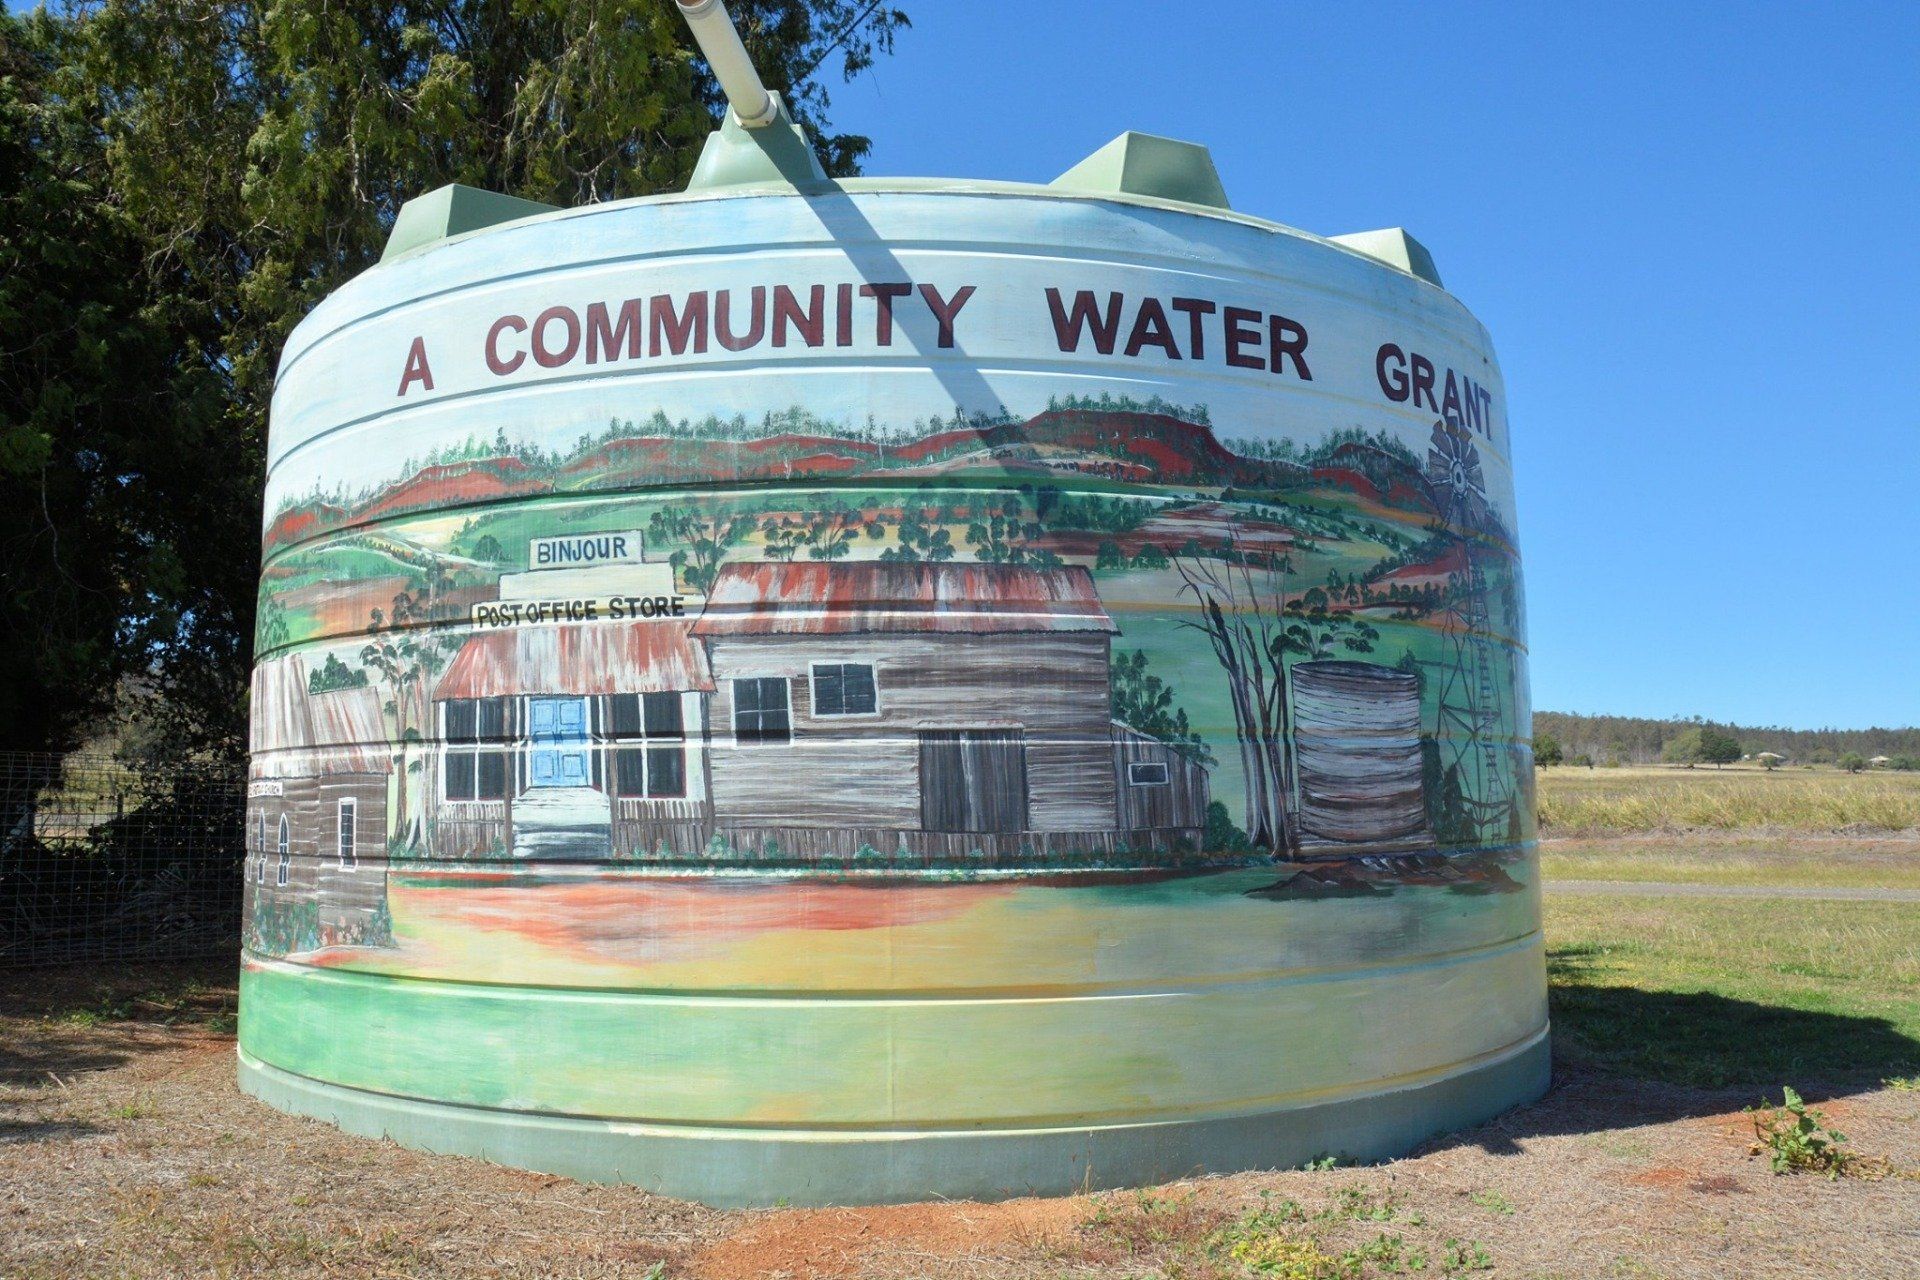 Binjour Water Tank Art, Australian Silo Art Trail